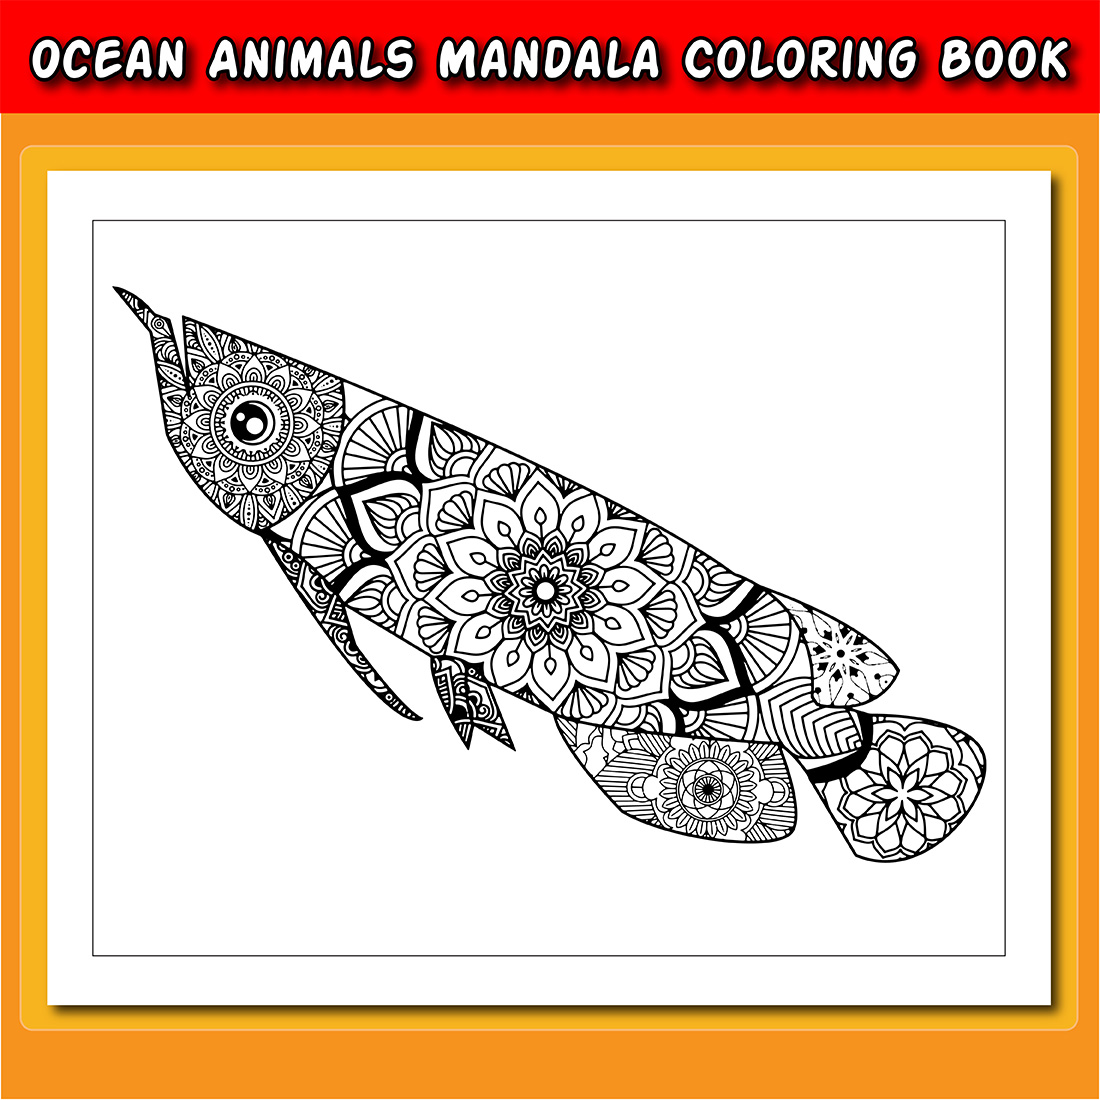 preview image Ocean Animals Mandala Coloring Book